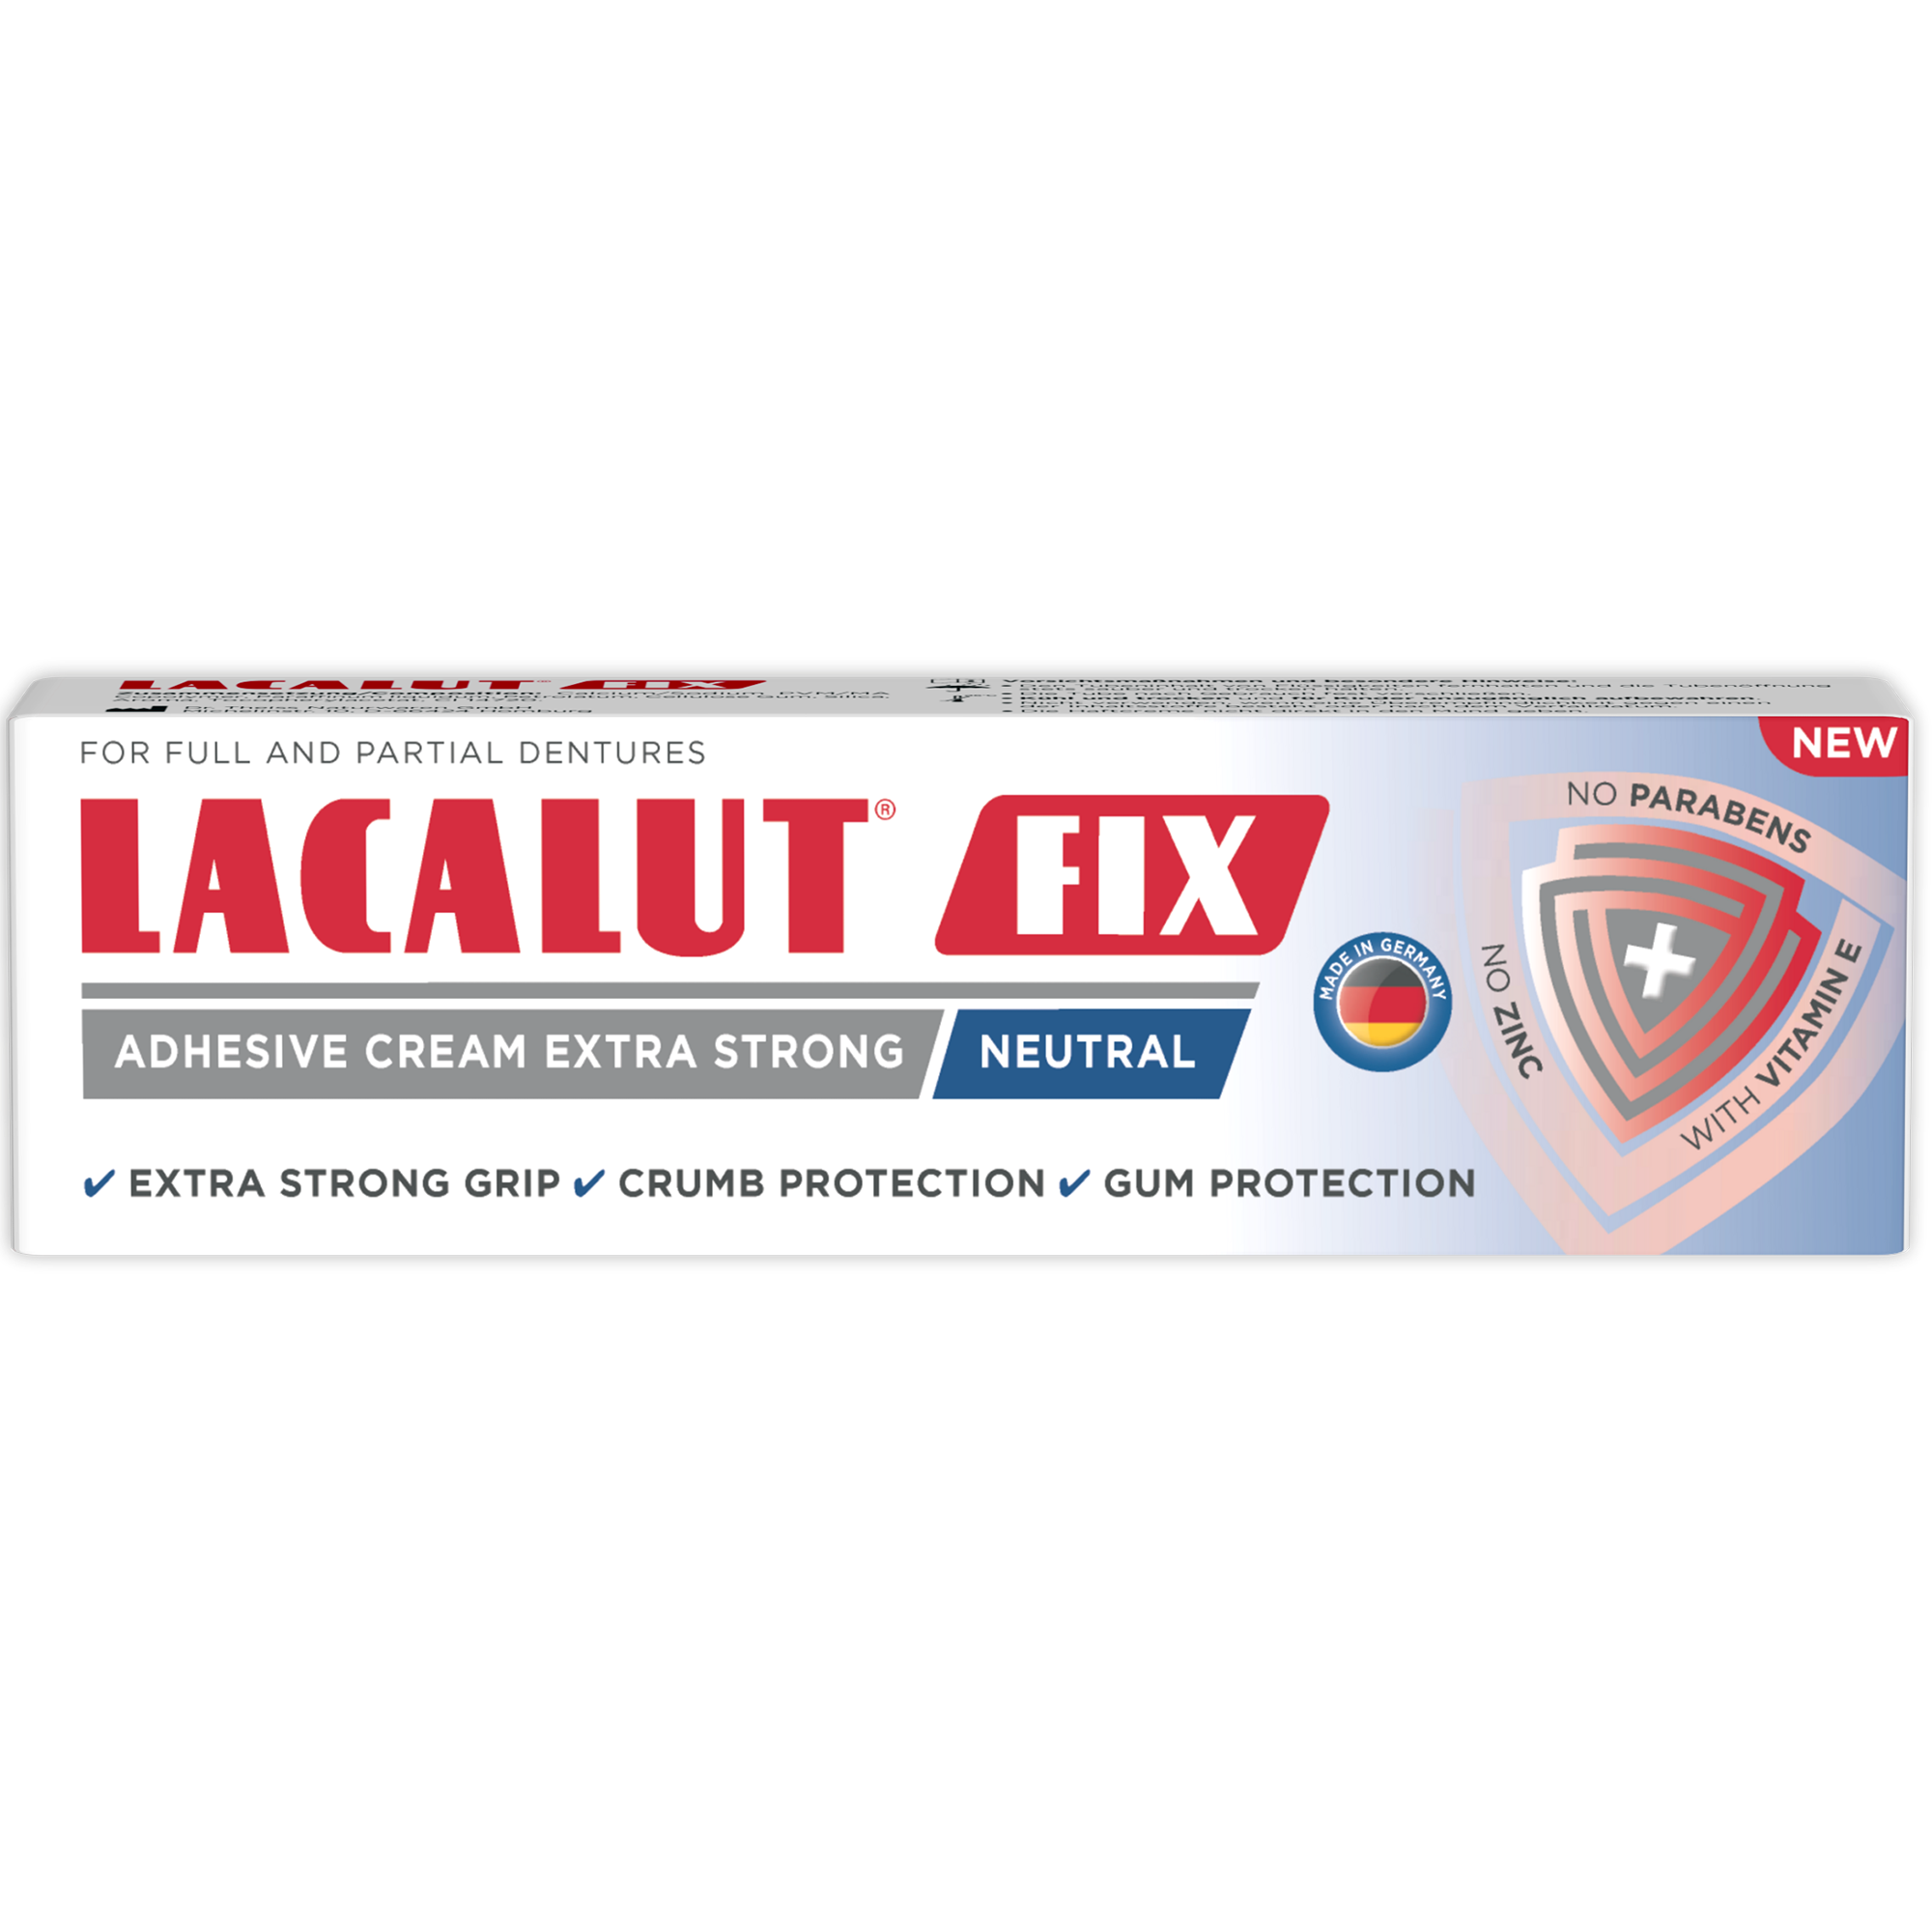 Ingrijire orala - Lacalut fix neutral 40 ml, farmacieieftina.ro